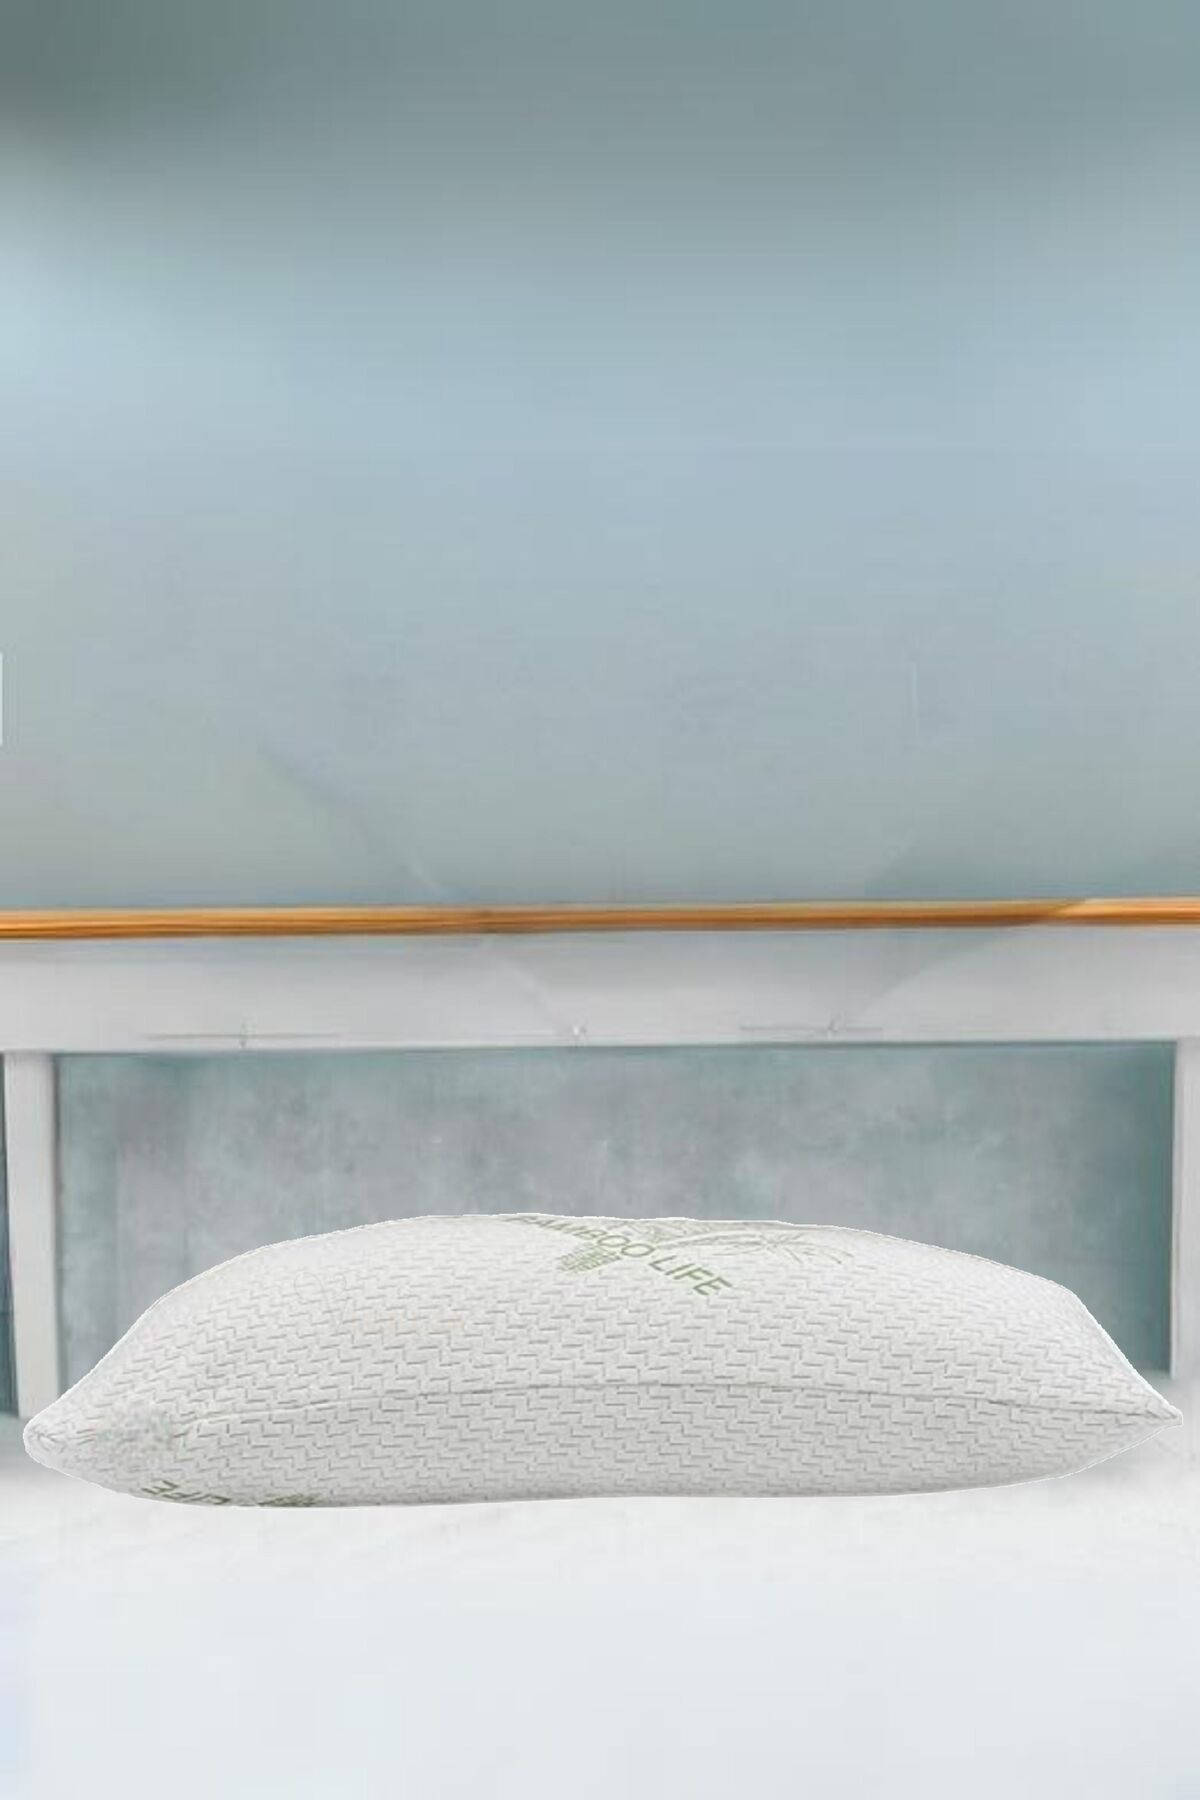 Viselia Visco Yastık Bambu Yastık Terletmeyen Yastık Sert Yastık 1 Adet 50x70